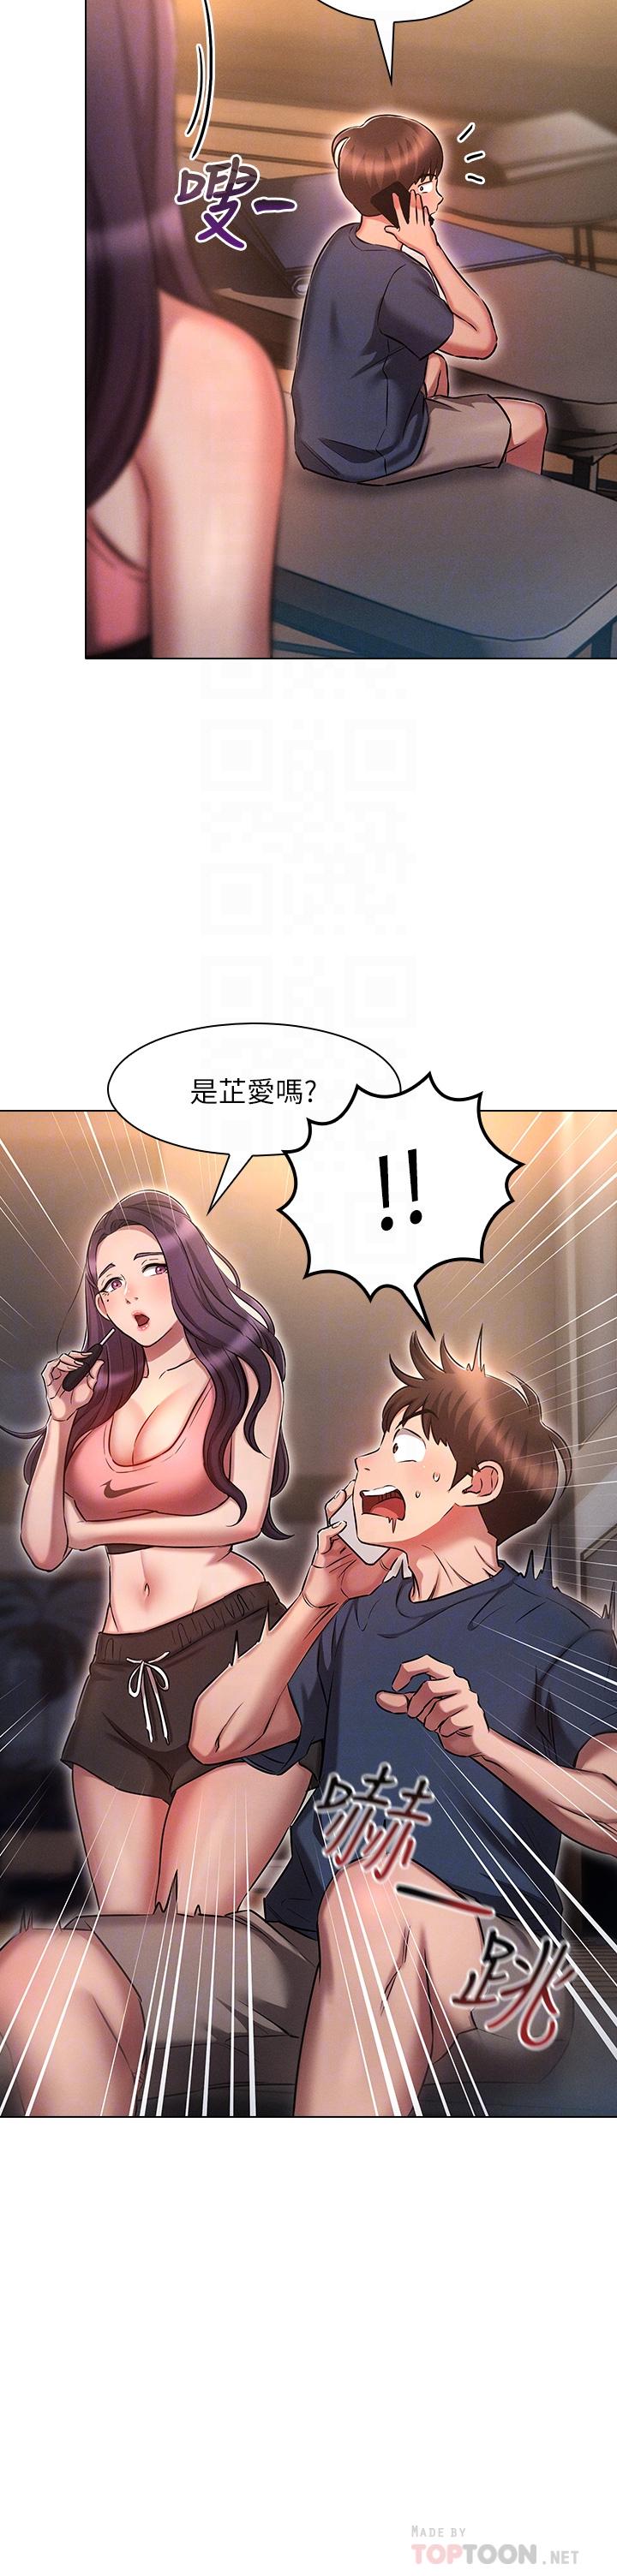 韩国污漫画 魯蛇的多重宇宙 第19话-代理的凌辱 18